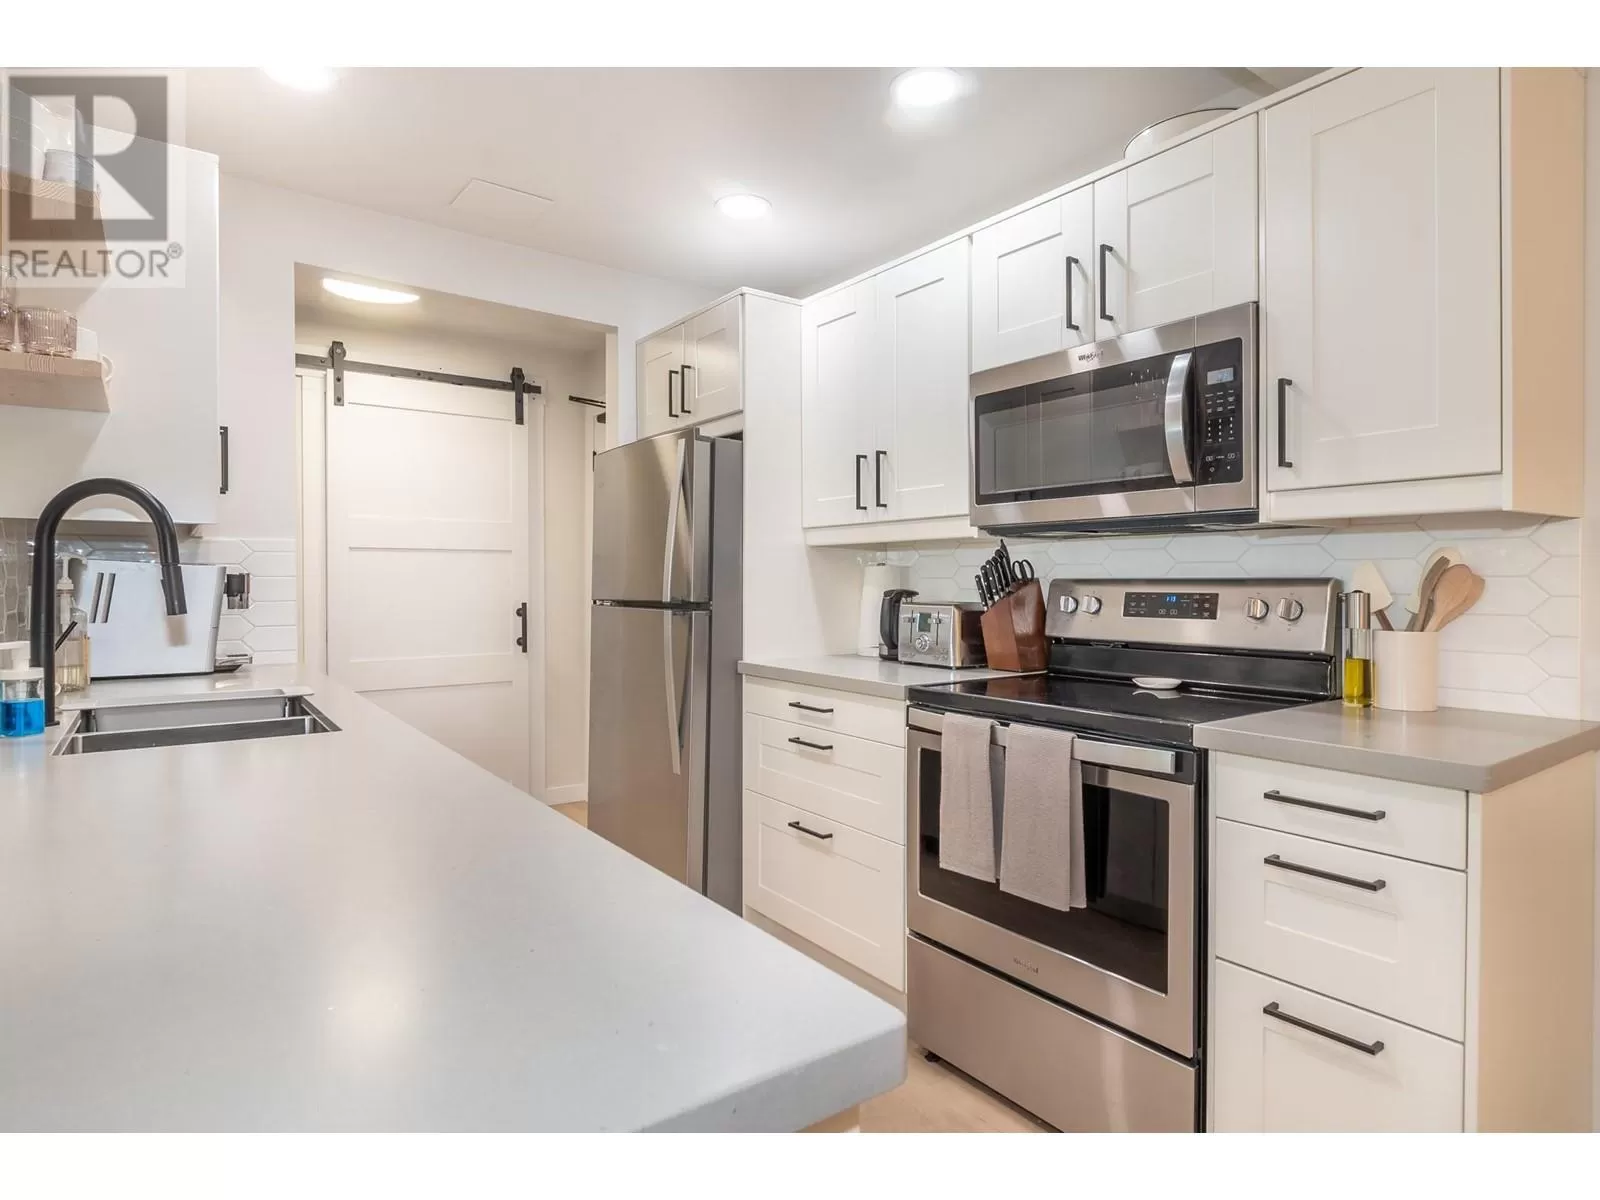 Apartment for rent: 1801 32 Street Unit# 110, Vernon, British Columbia V1T 5K4